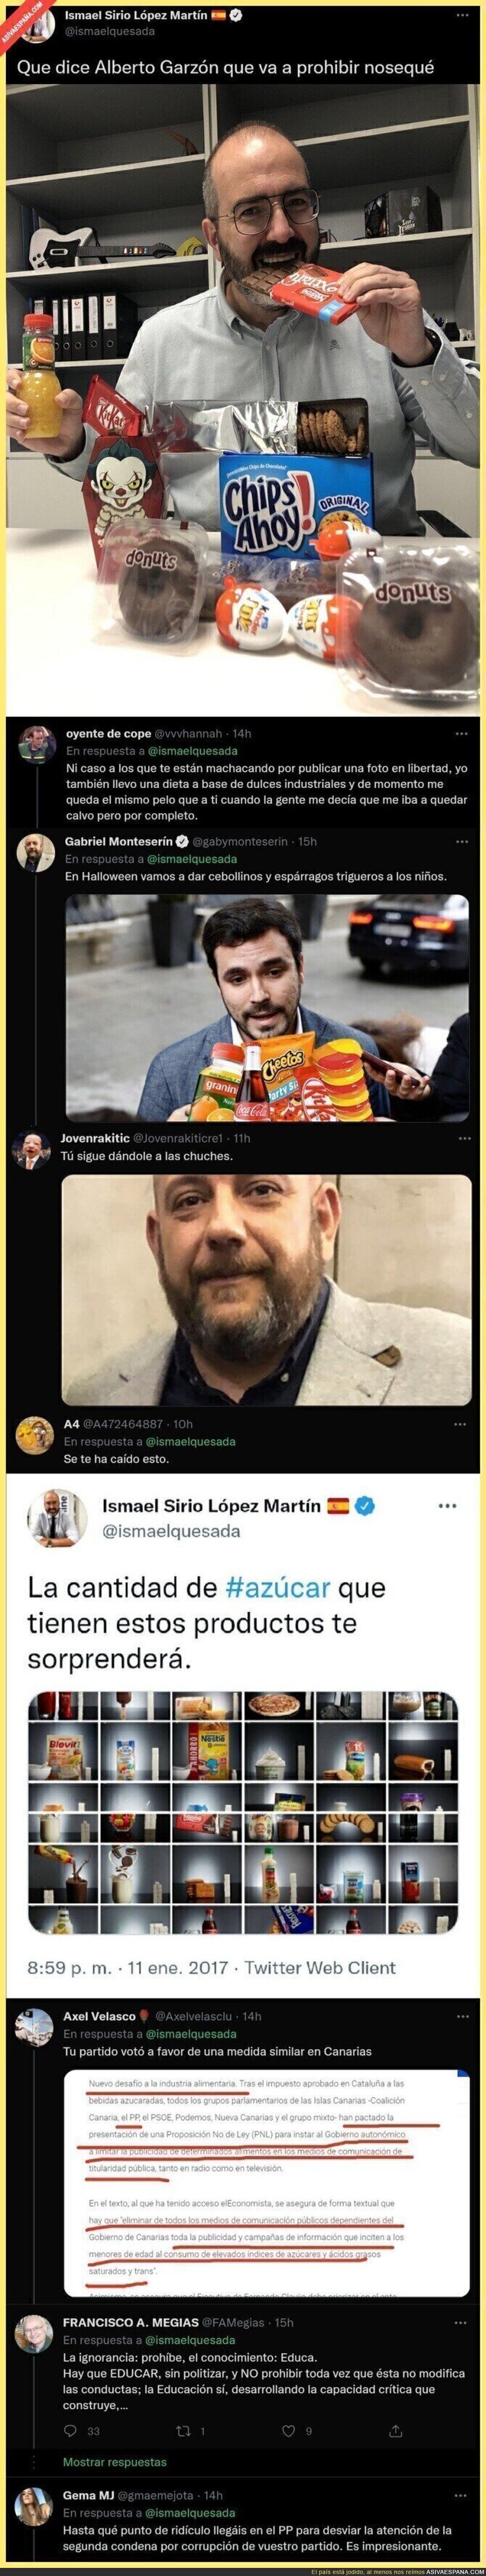 El responsable de Comunicación Online del PP carta contra Alberto Garzón por prohibir la publicidad de dulces con esta foto y todo el mundo se está riendo de él